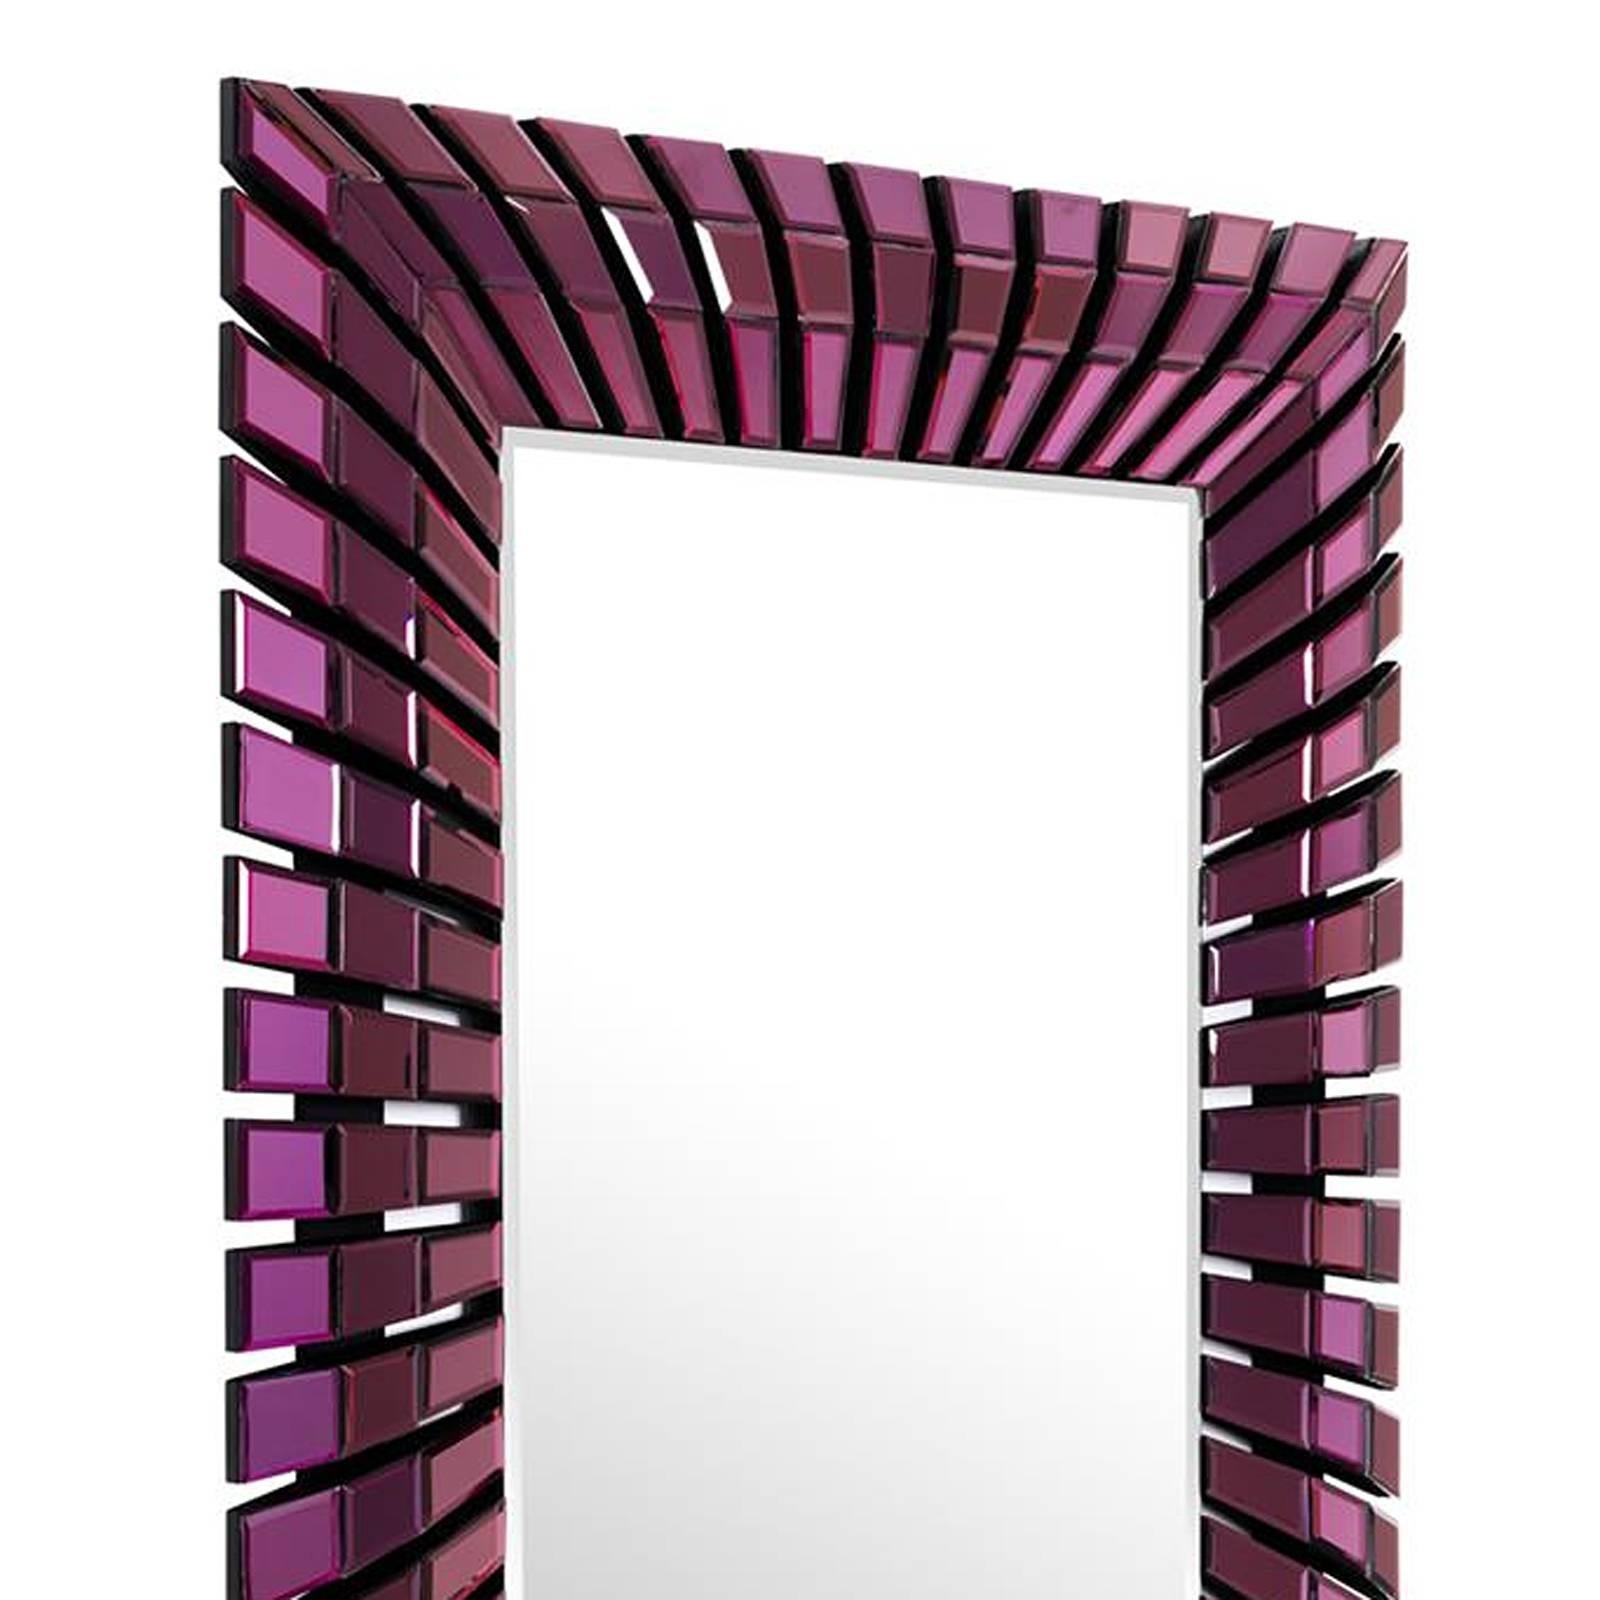 Mirror eclipse in purple bevelled mirror glass.
Frame in fibre. Smart indoor mirror.
Also available in clear bevelled mirror glass.
